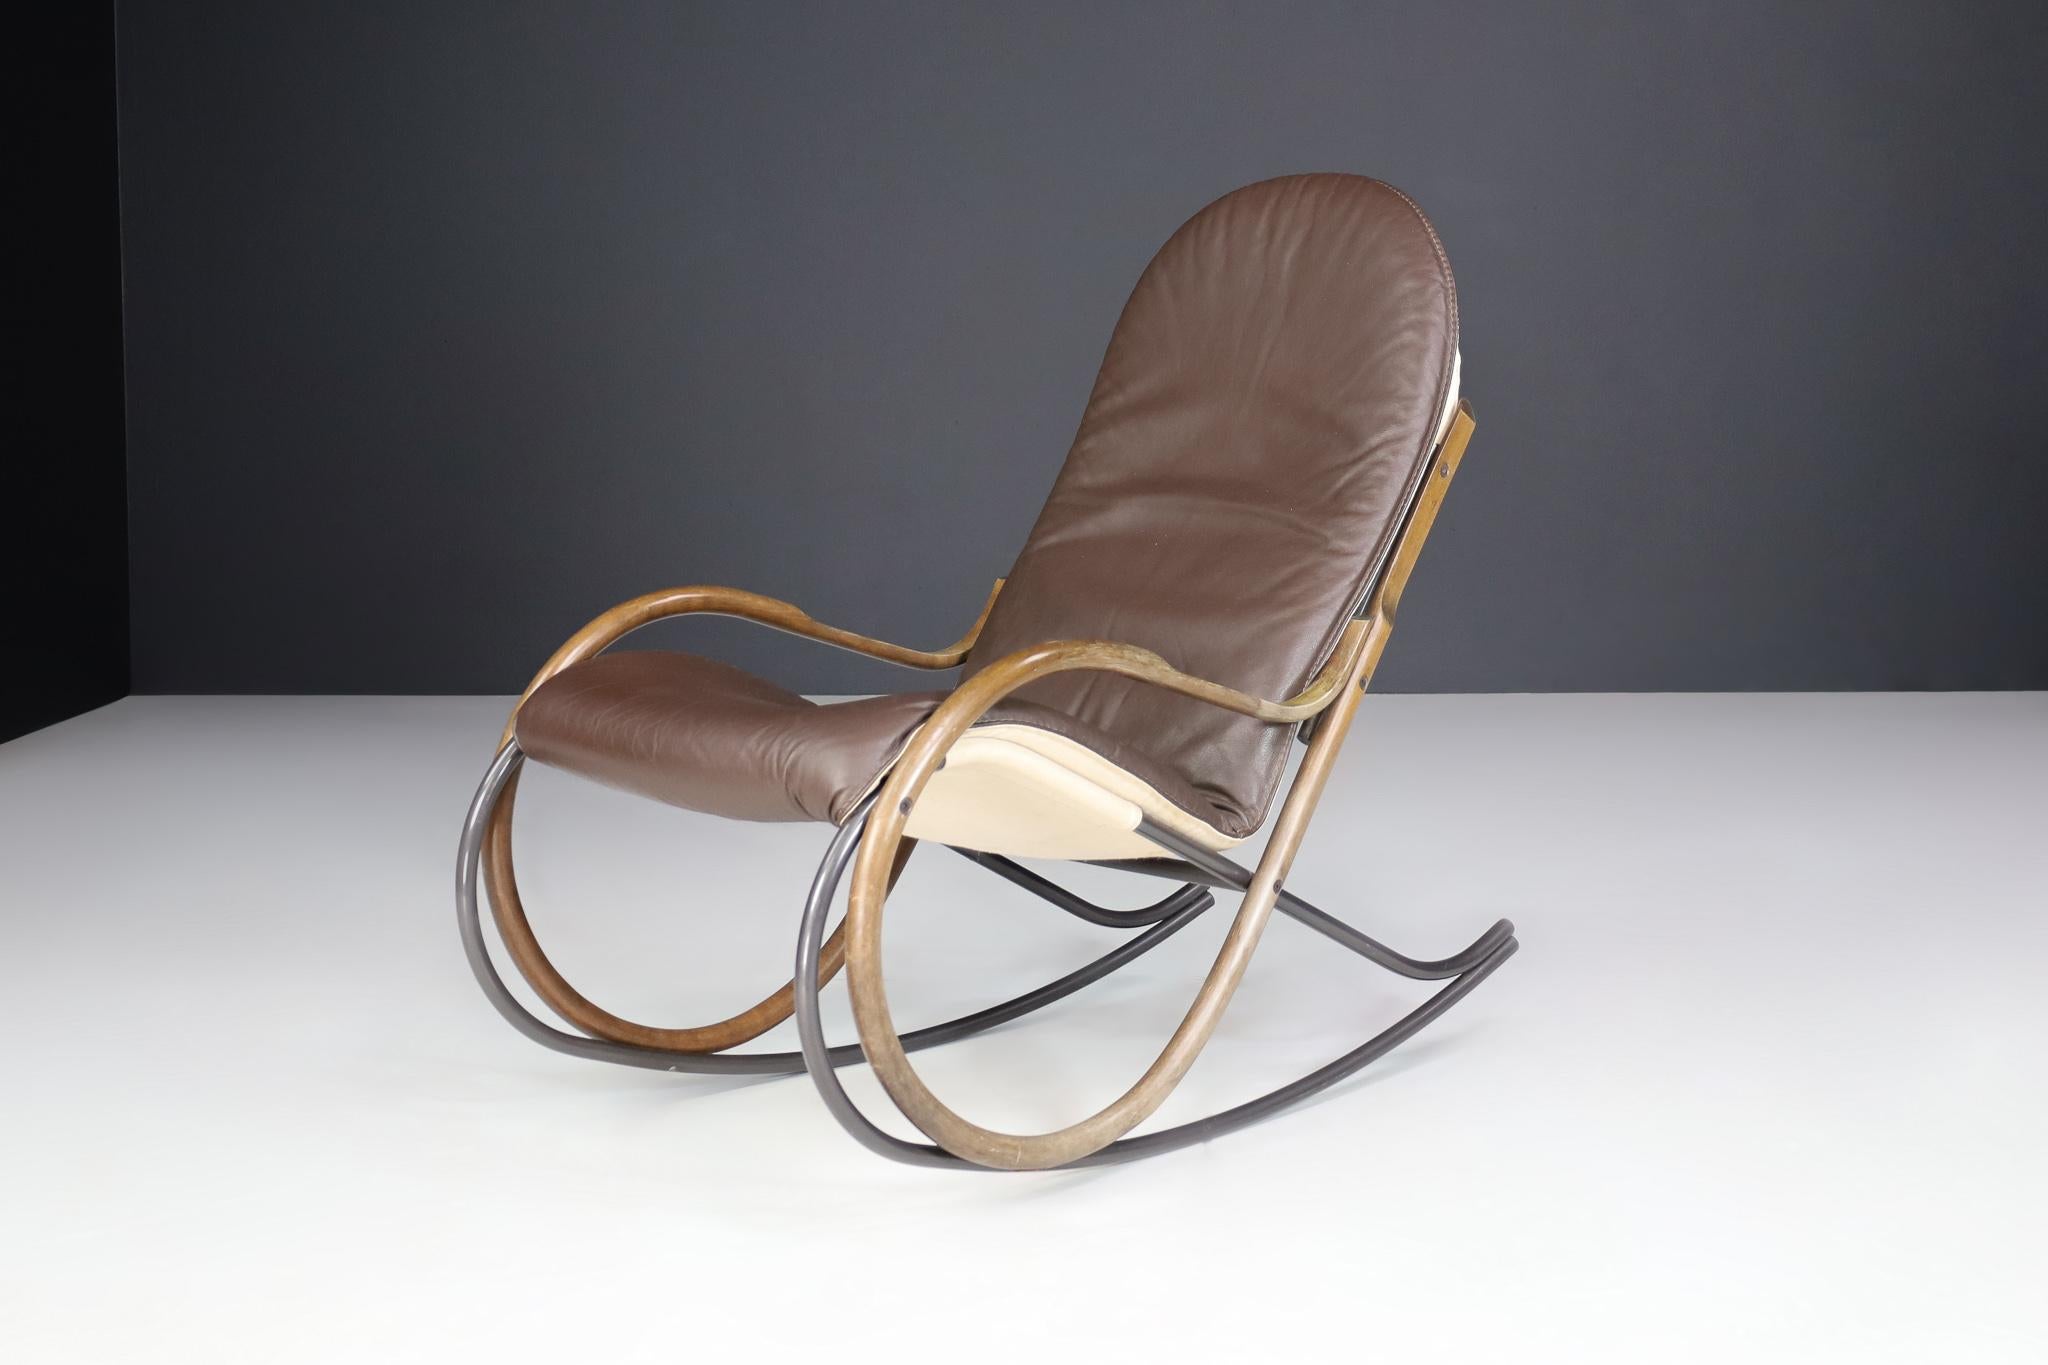 Der Sessel ''Nonna'' ist die moderne Interpretation eines Schaukelstuhls, entworfen von dem Designer Paul Tuttle für die Schweizer Firma Strässle 1972.
Gebogenes Stahlrohr verchromt, in Kombination mit Buchenholz und einem sehr hochwertigen